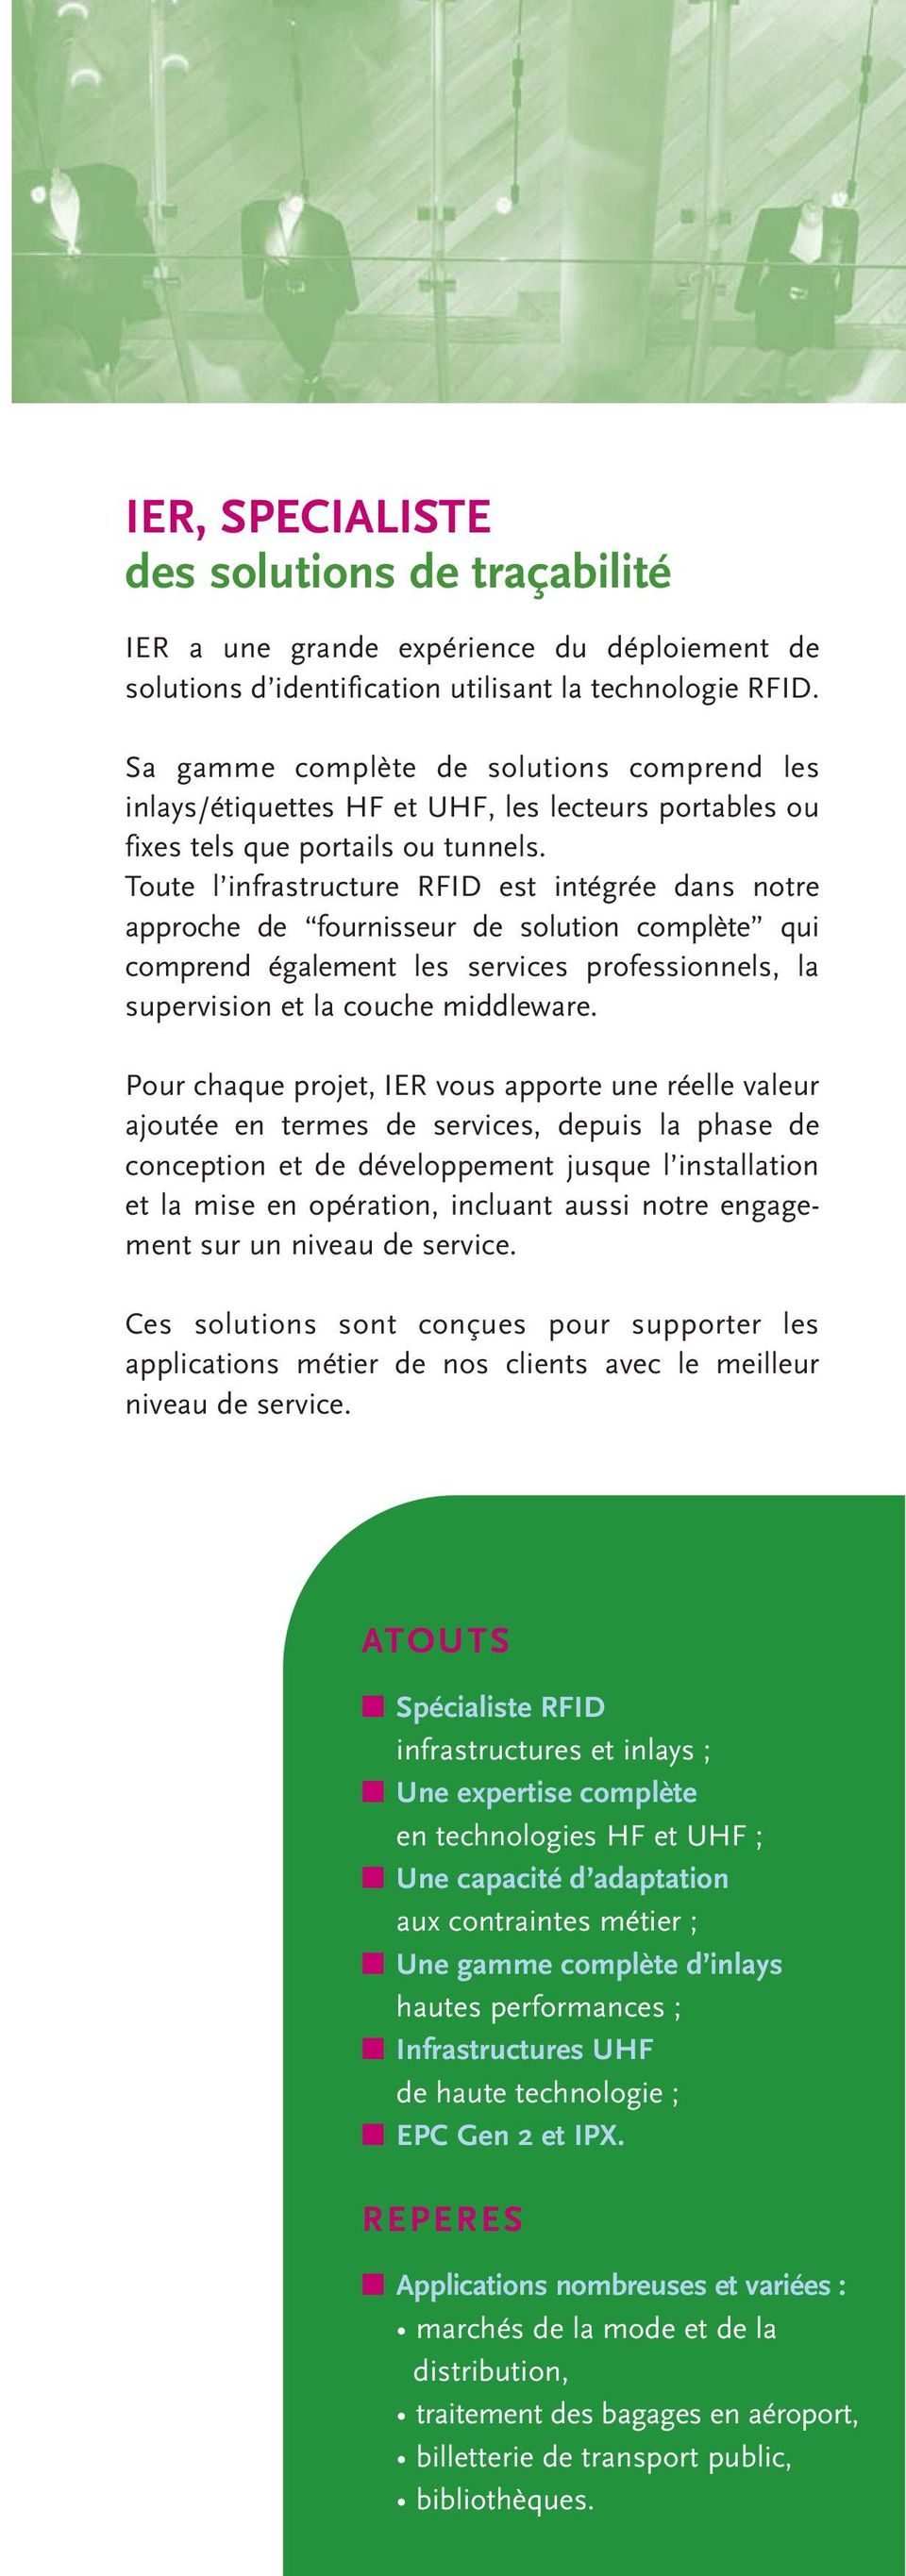 Toute l infrastructure RFID est intégrée dans notre approche de fournisseur de solution complète qui comprend également les services professionnels, la supervision et la couche middleware.